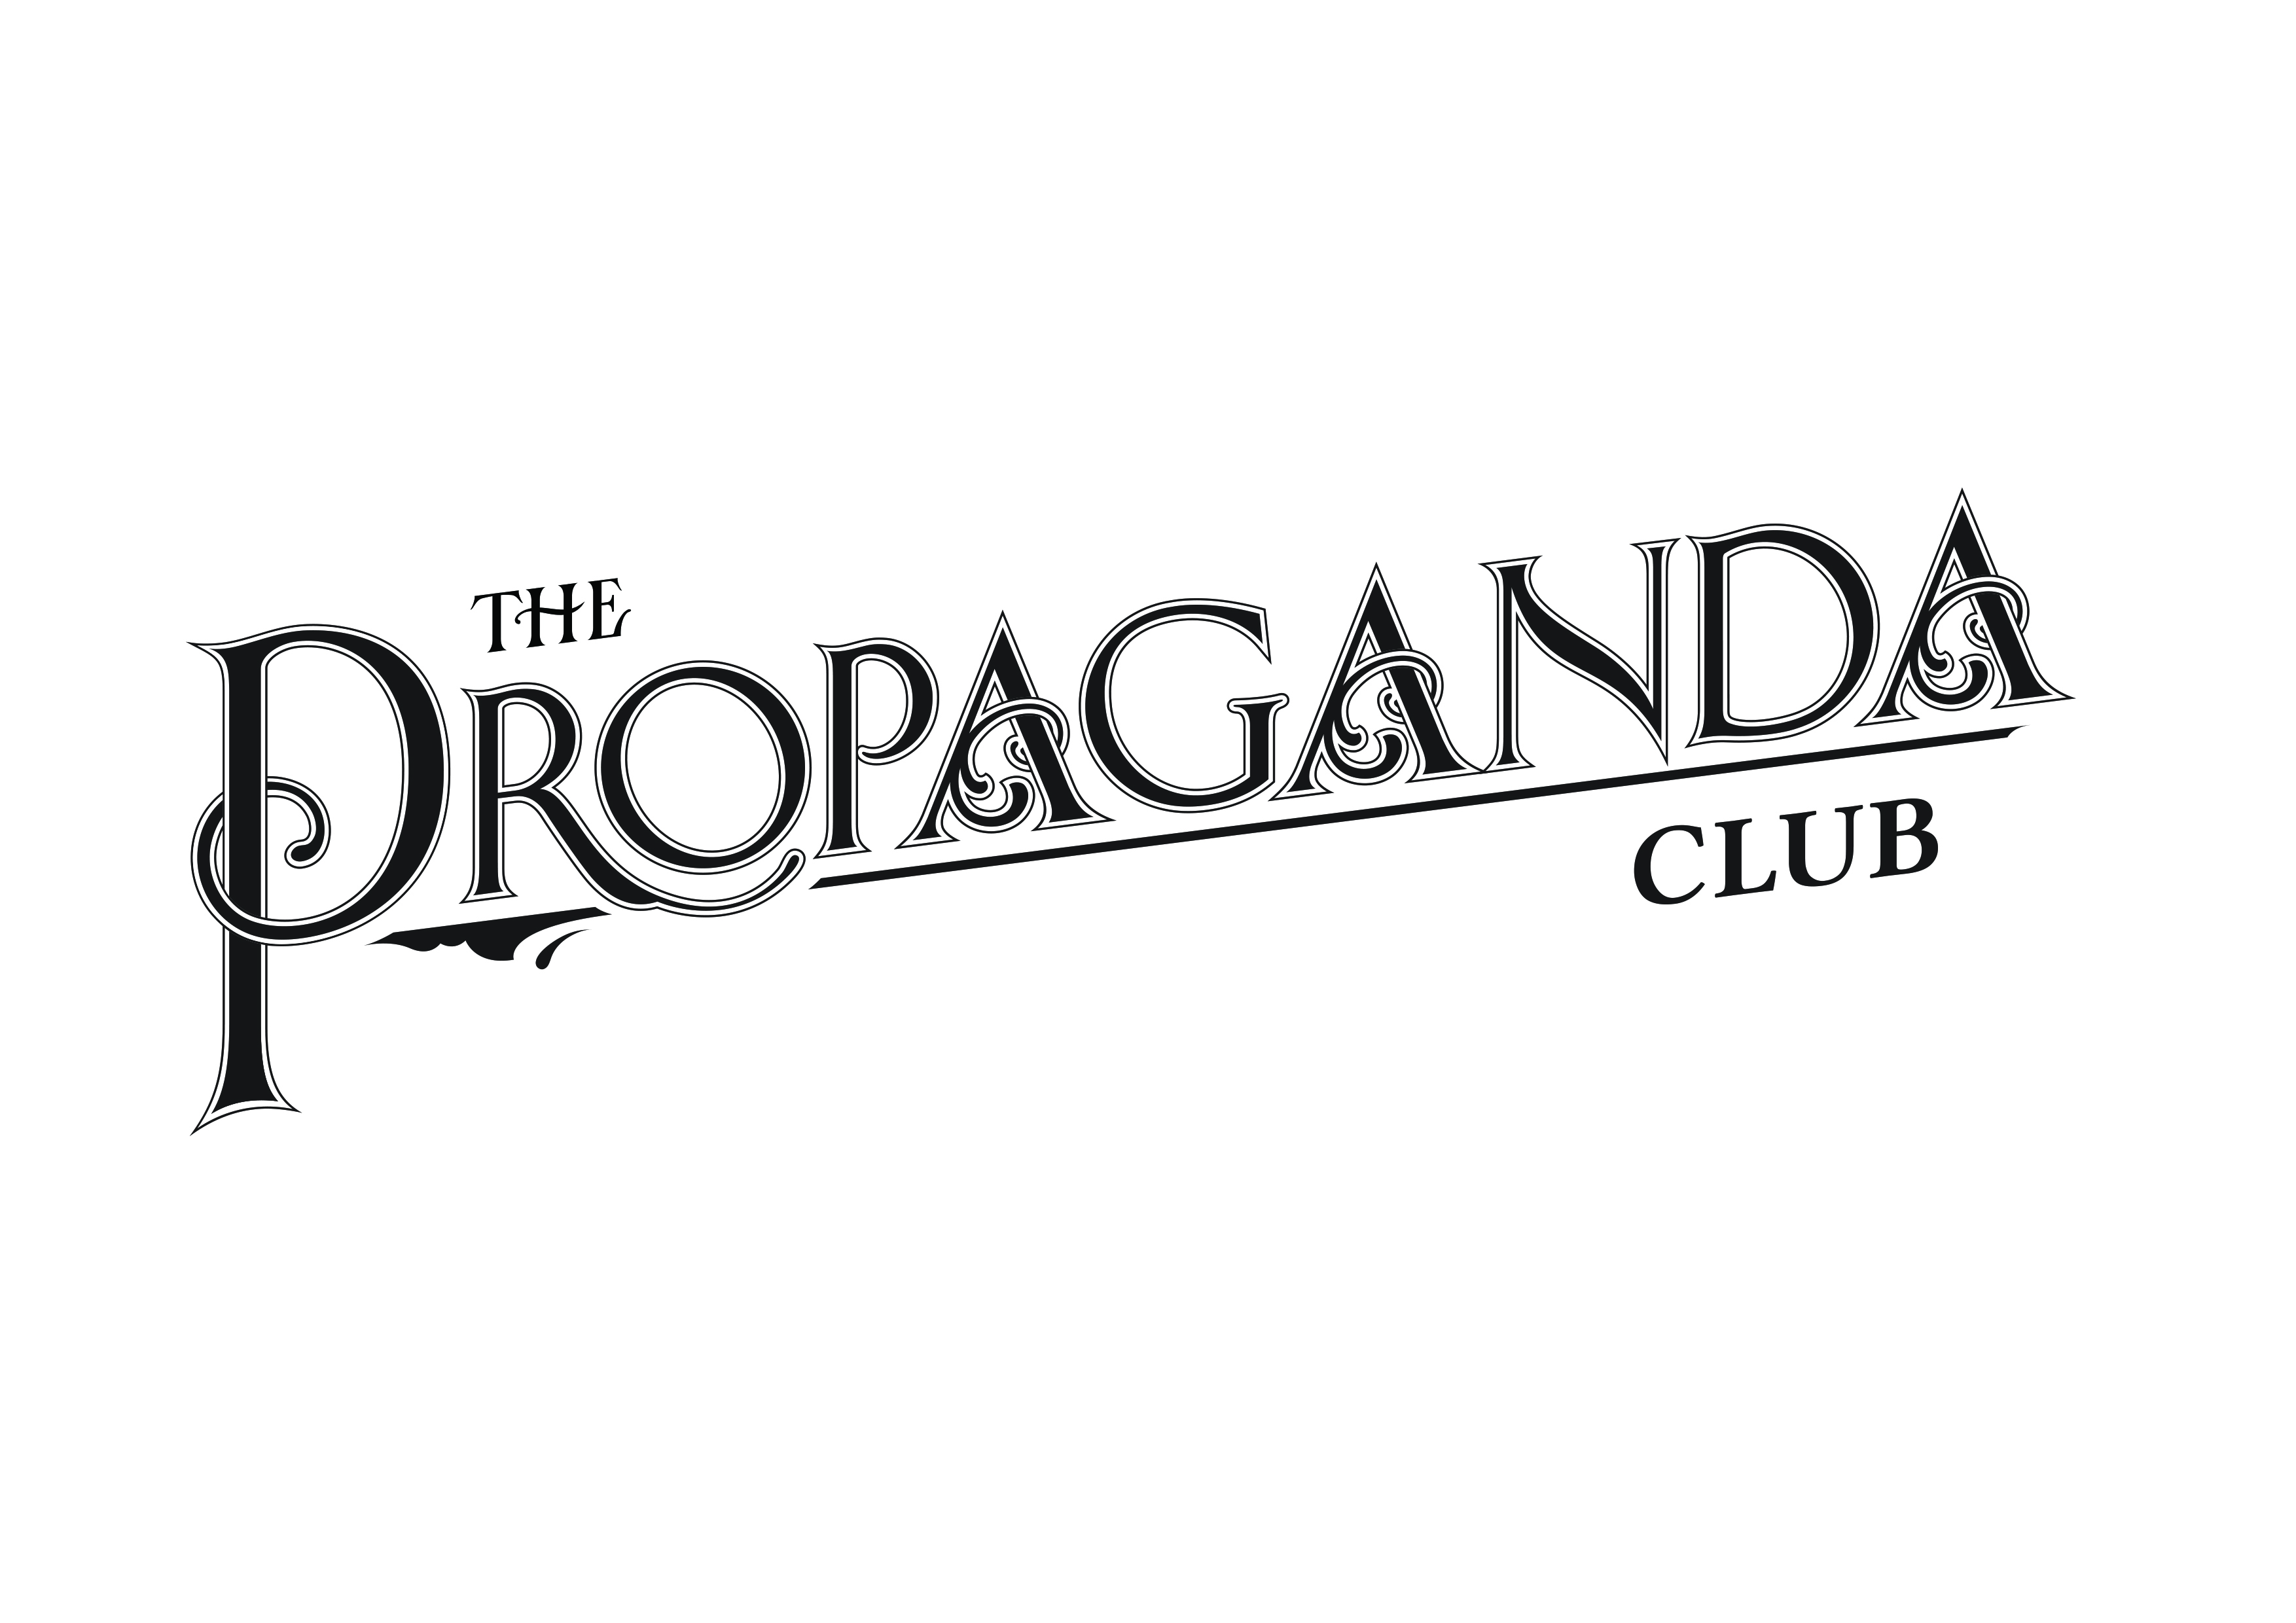 The Propaganda Club